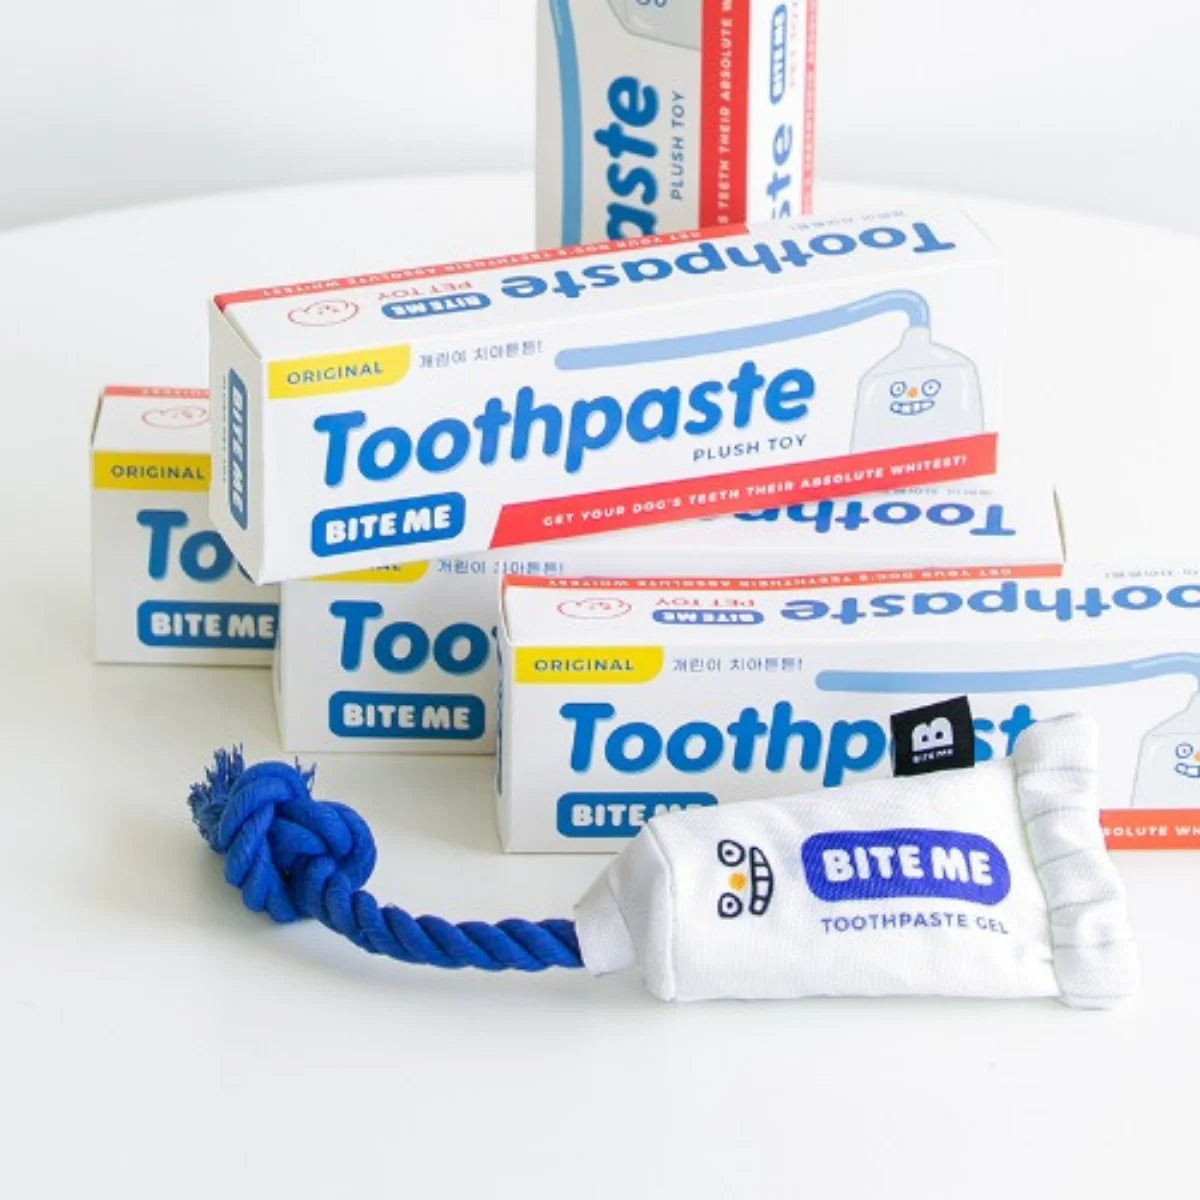 Bite Me - Toothpaste Gel Plush Toy